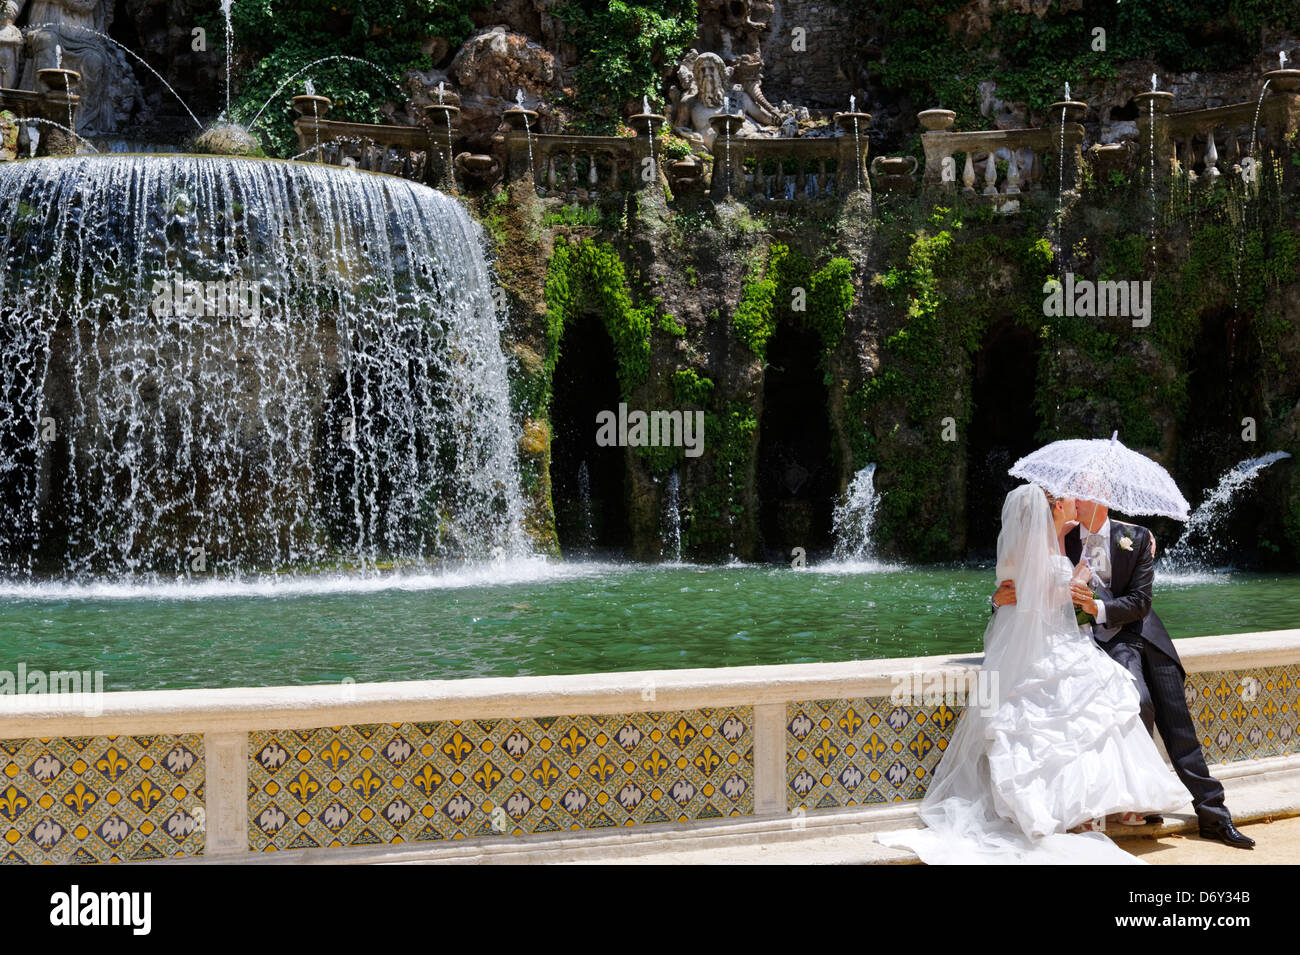 Villa D Este. Tivoli. L'Italia. Vista di una sposa e lo sposo la grandiosa fontana dell'Ovato o ovale fontana progettata da Pirro Li Foto Stock